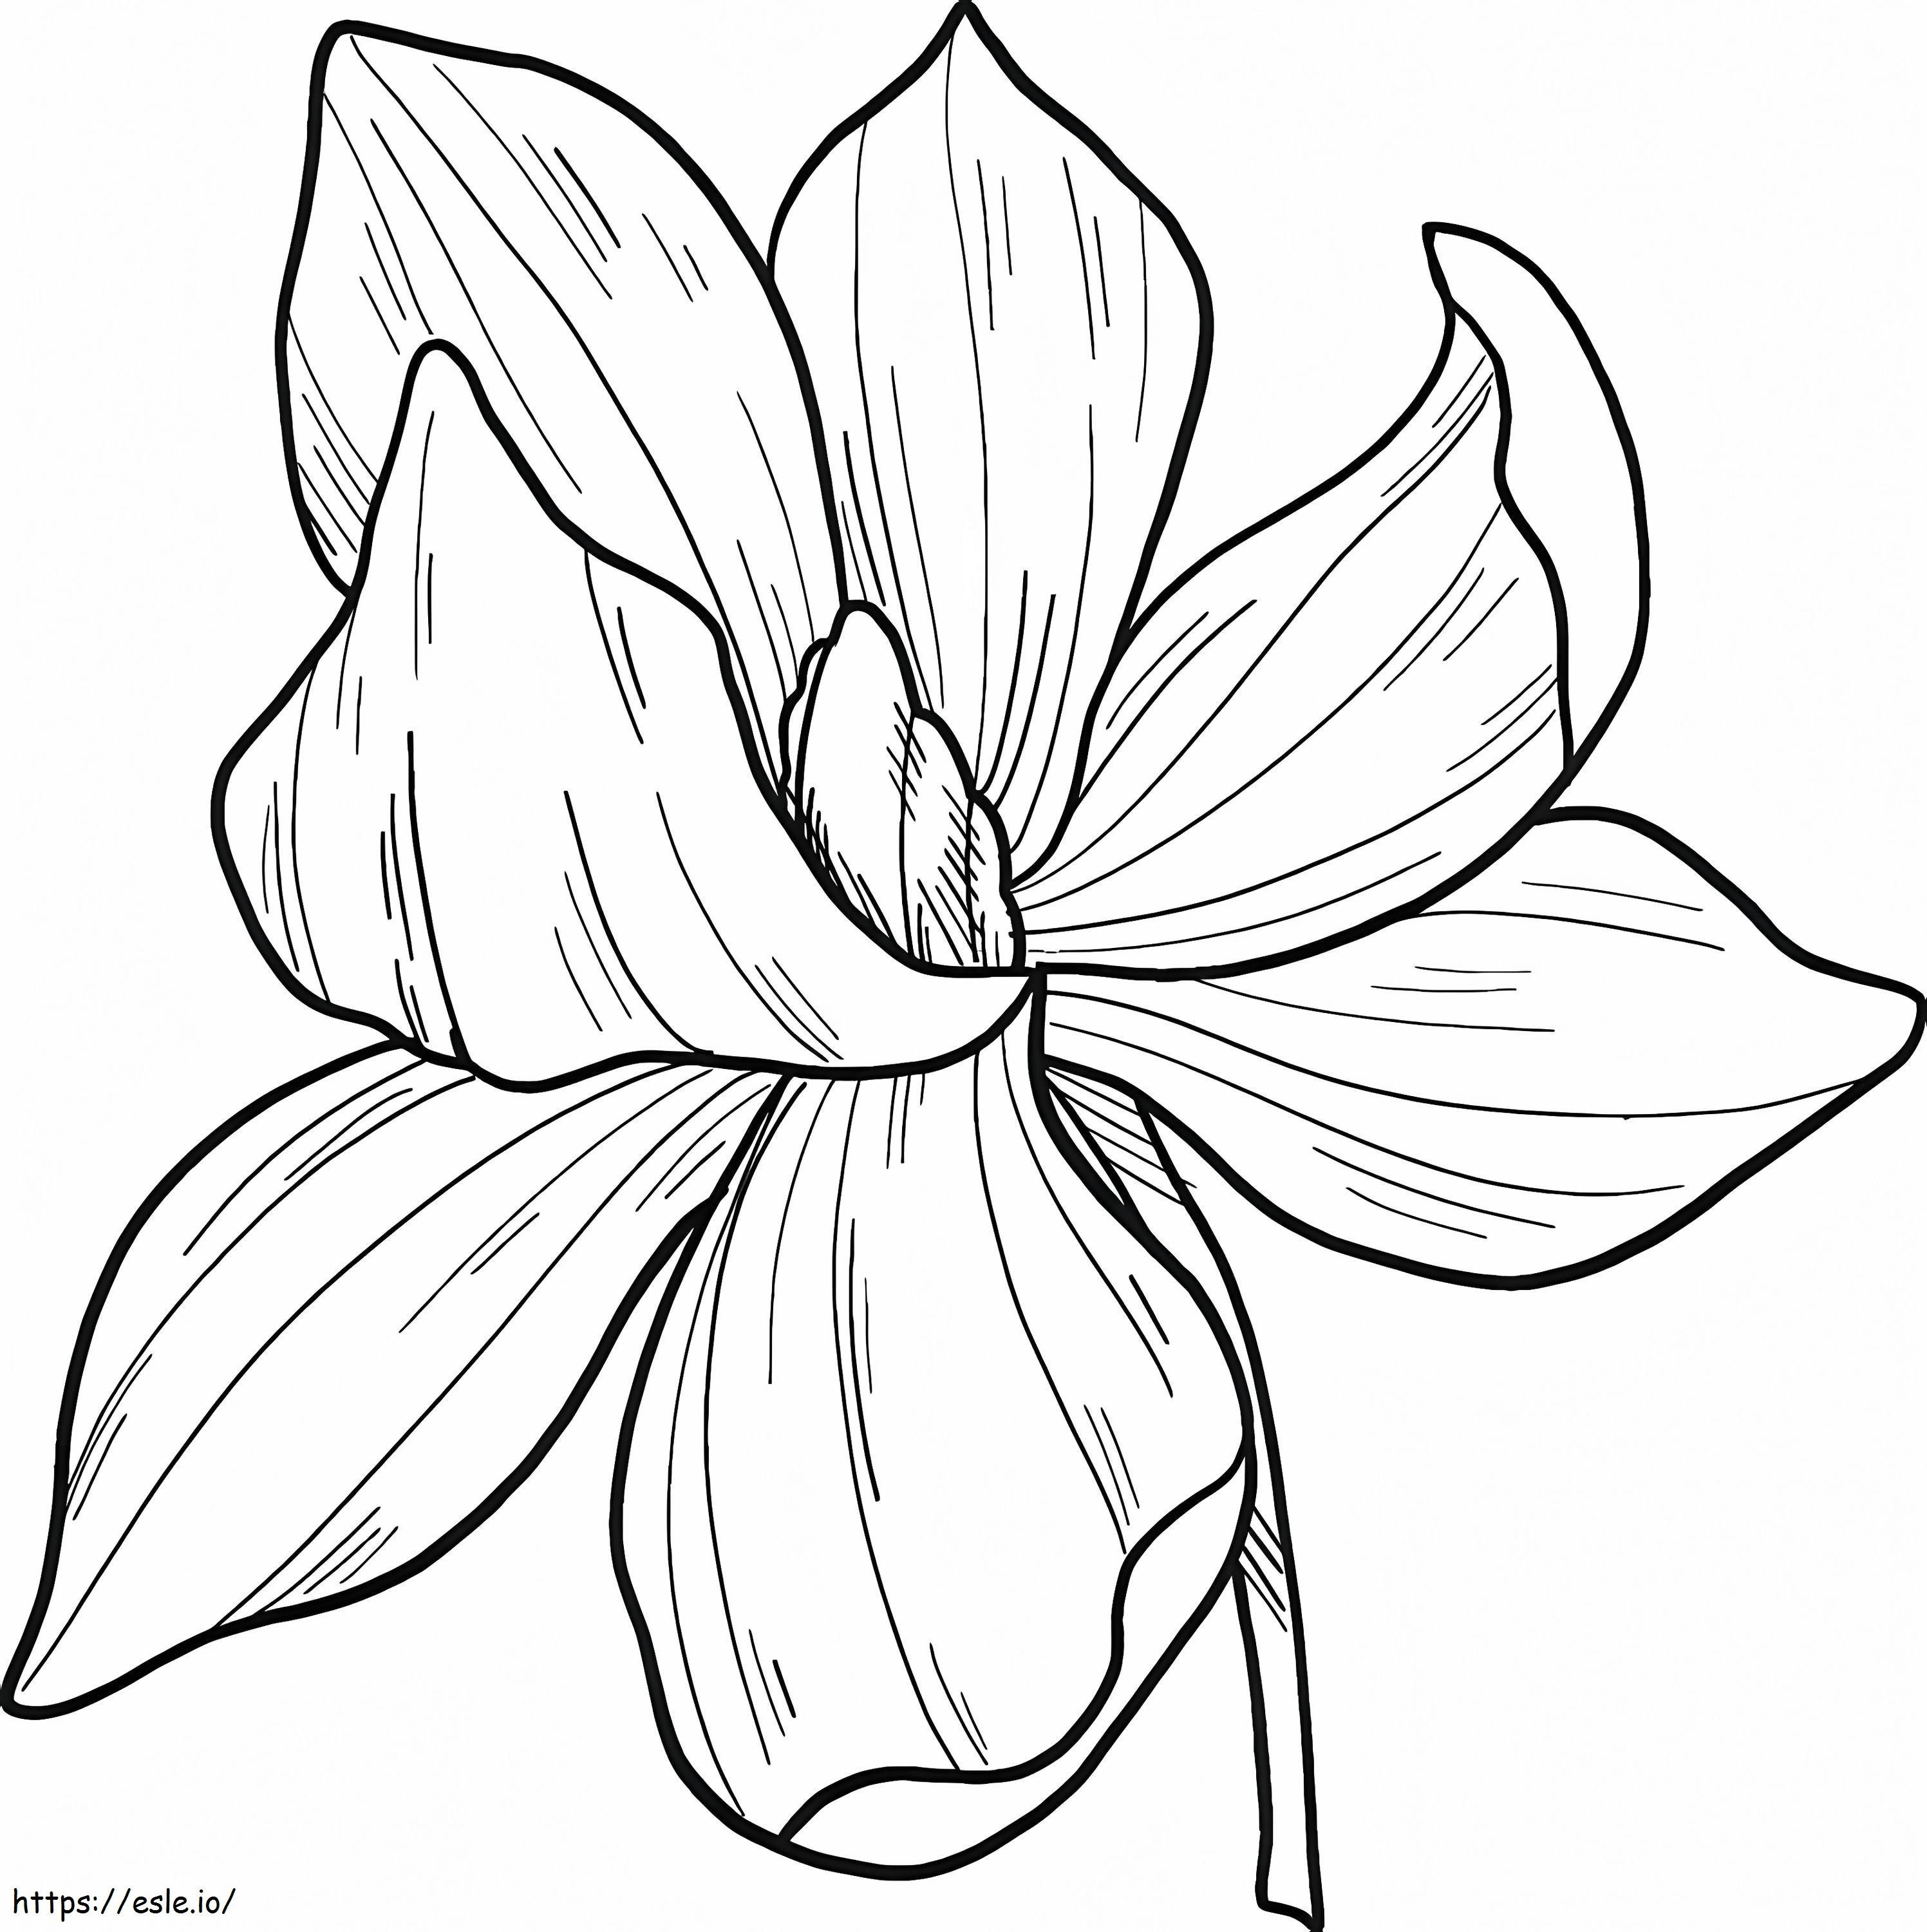 Coloriage Fleur de Magnolia 10 à imprimer dessin